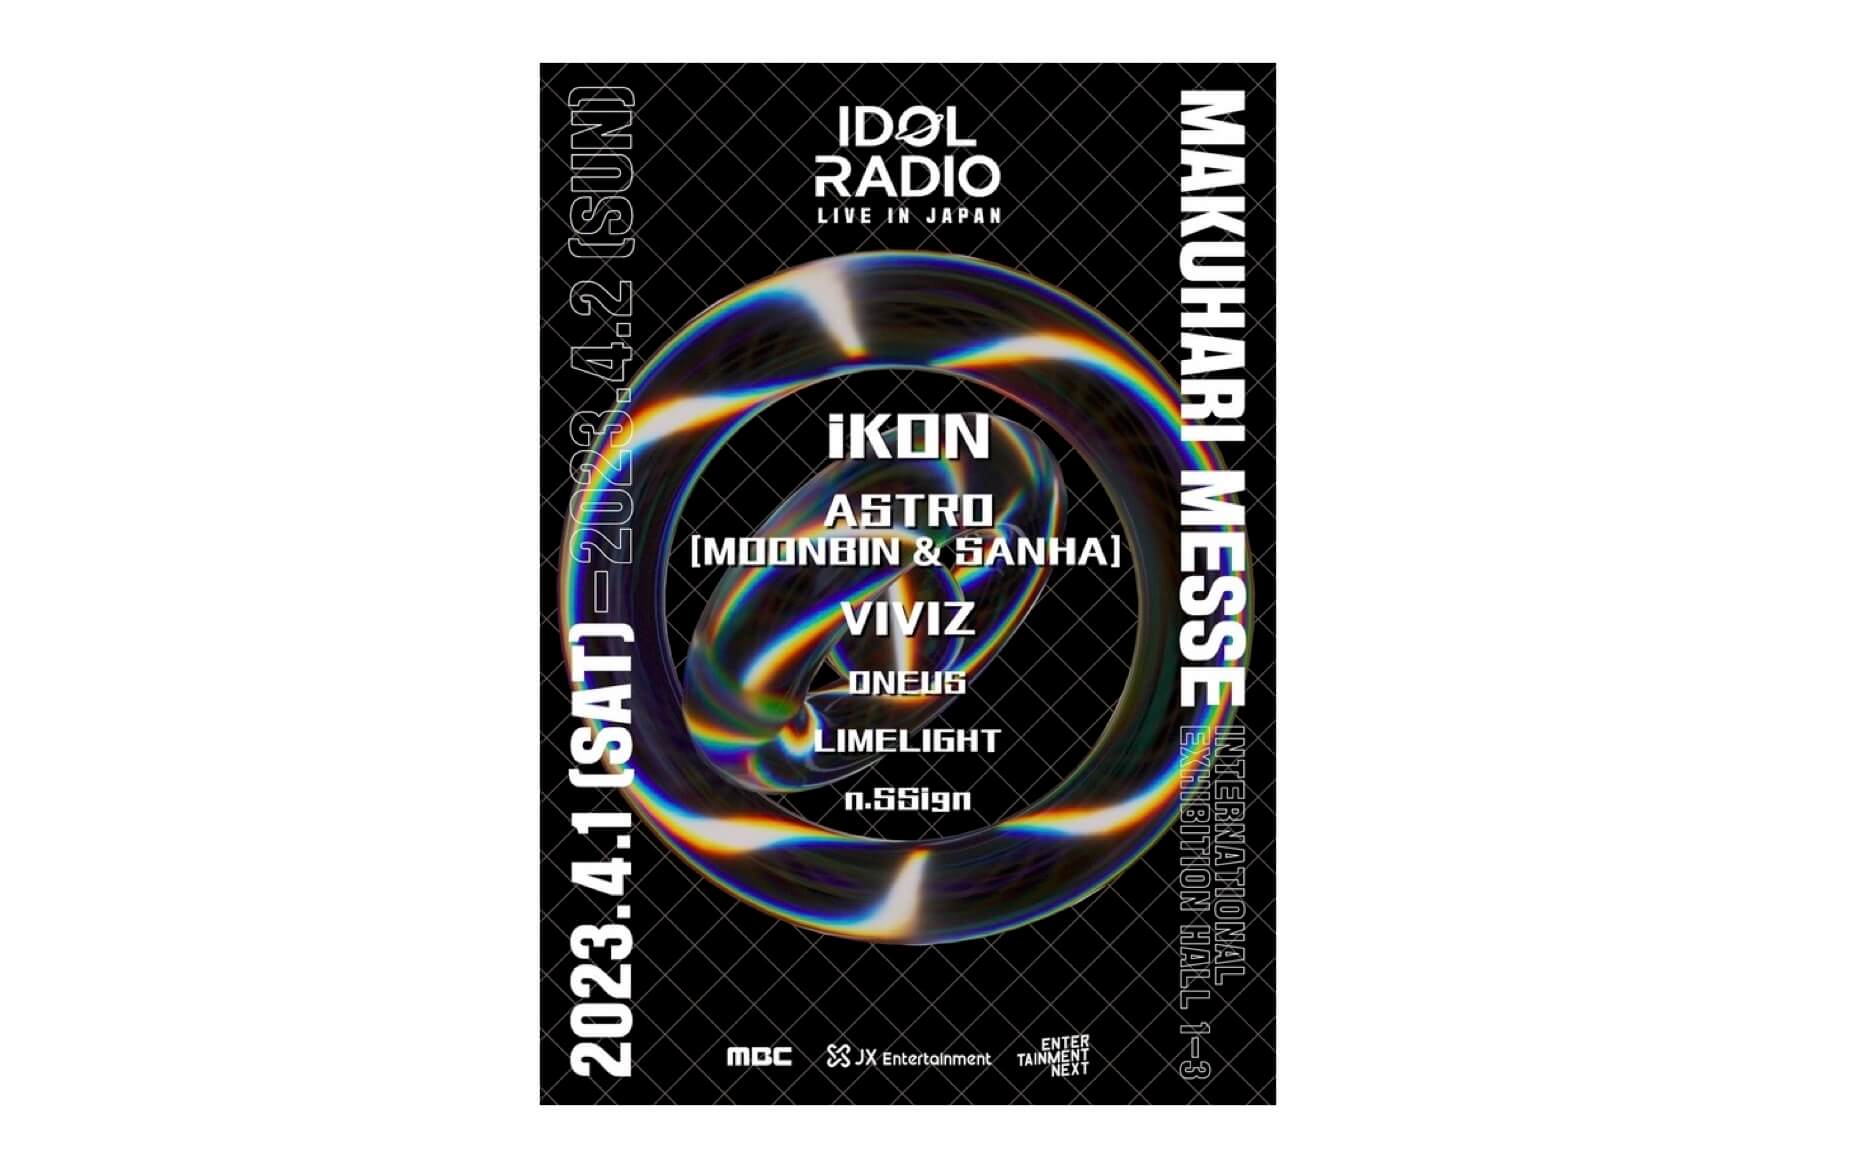 K-POP専門ラジオ番組のライブイベント『MBC IDOL RADIO LIVE in JAPAN』、 4月1日・2日に幕張メッセ国際展示場にて開催決定！